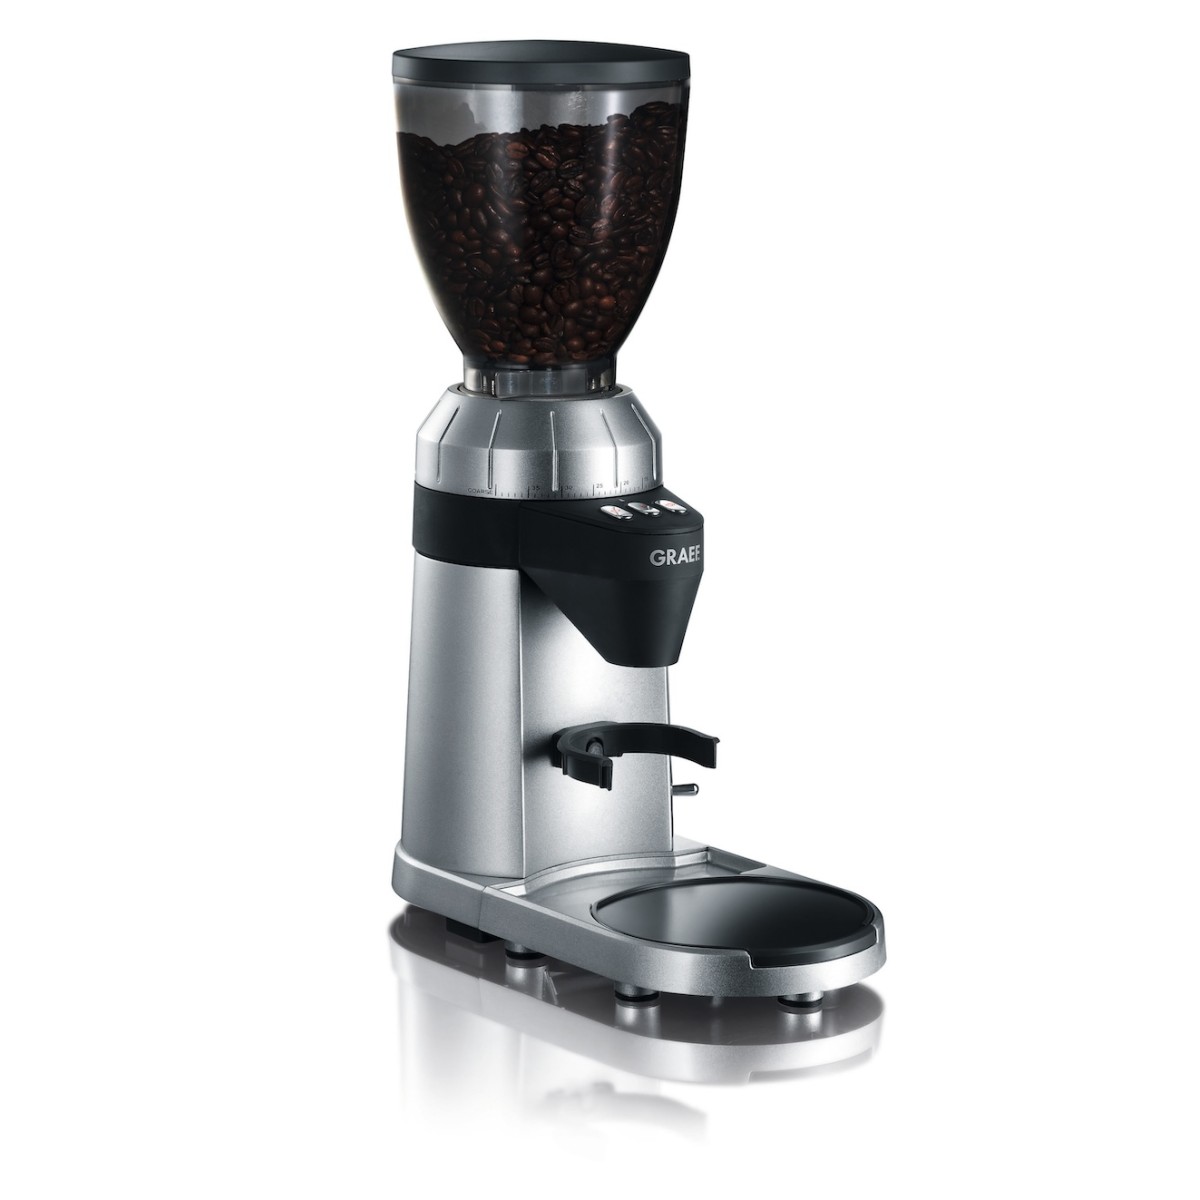 GRAEF CM900 coffee grinder